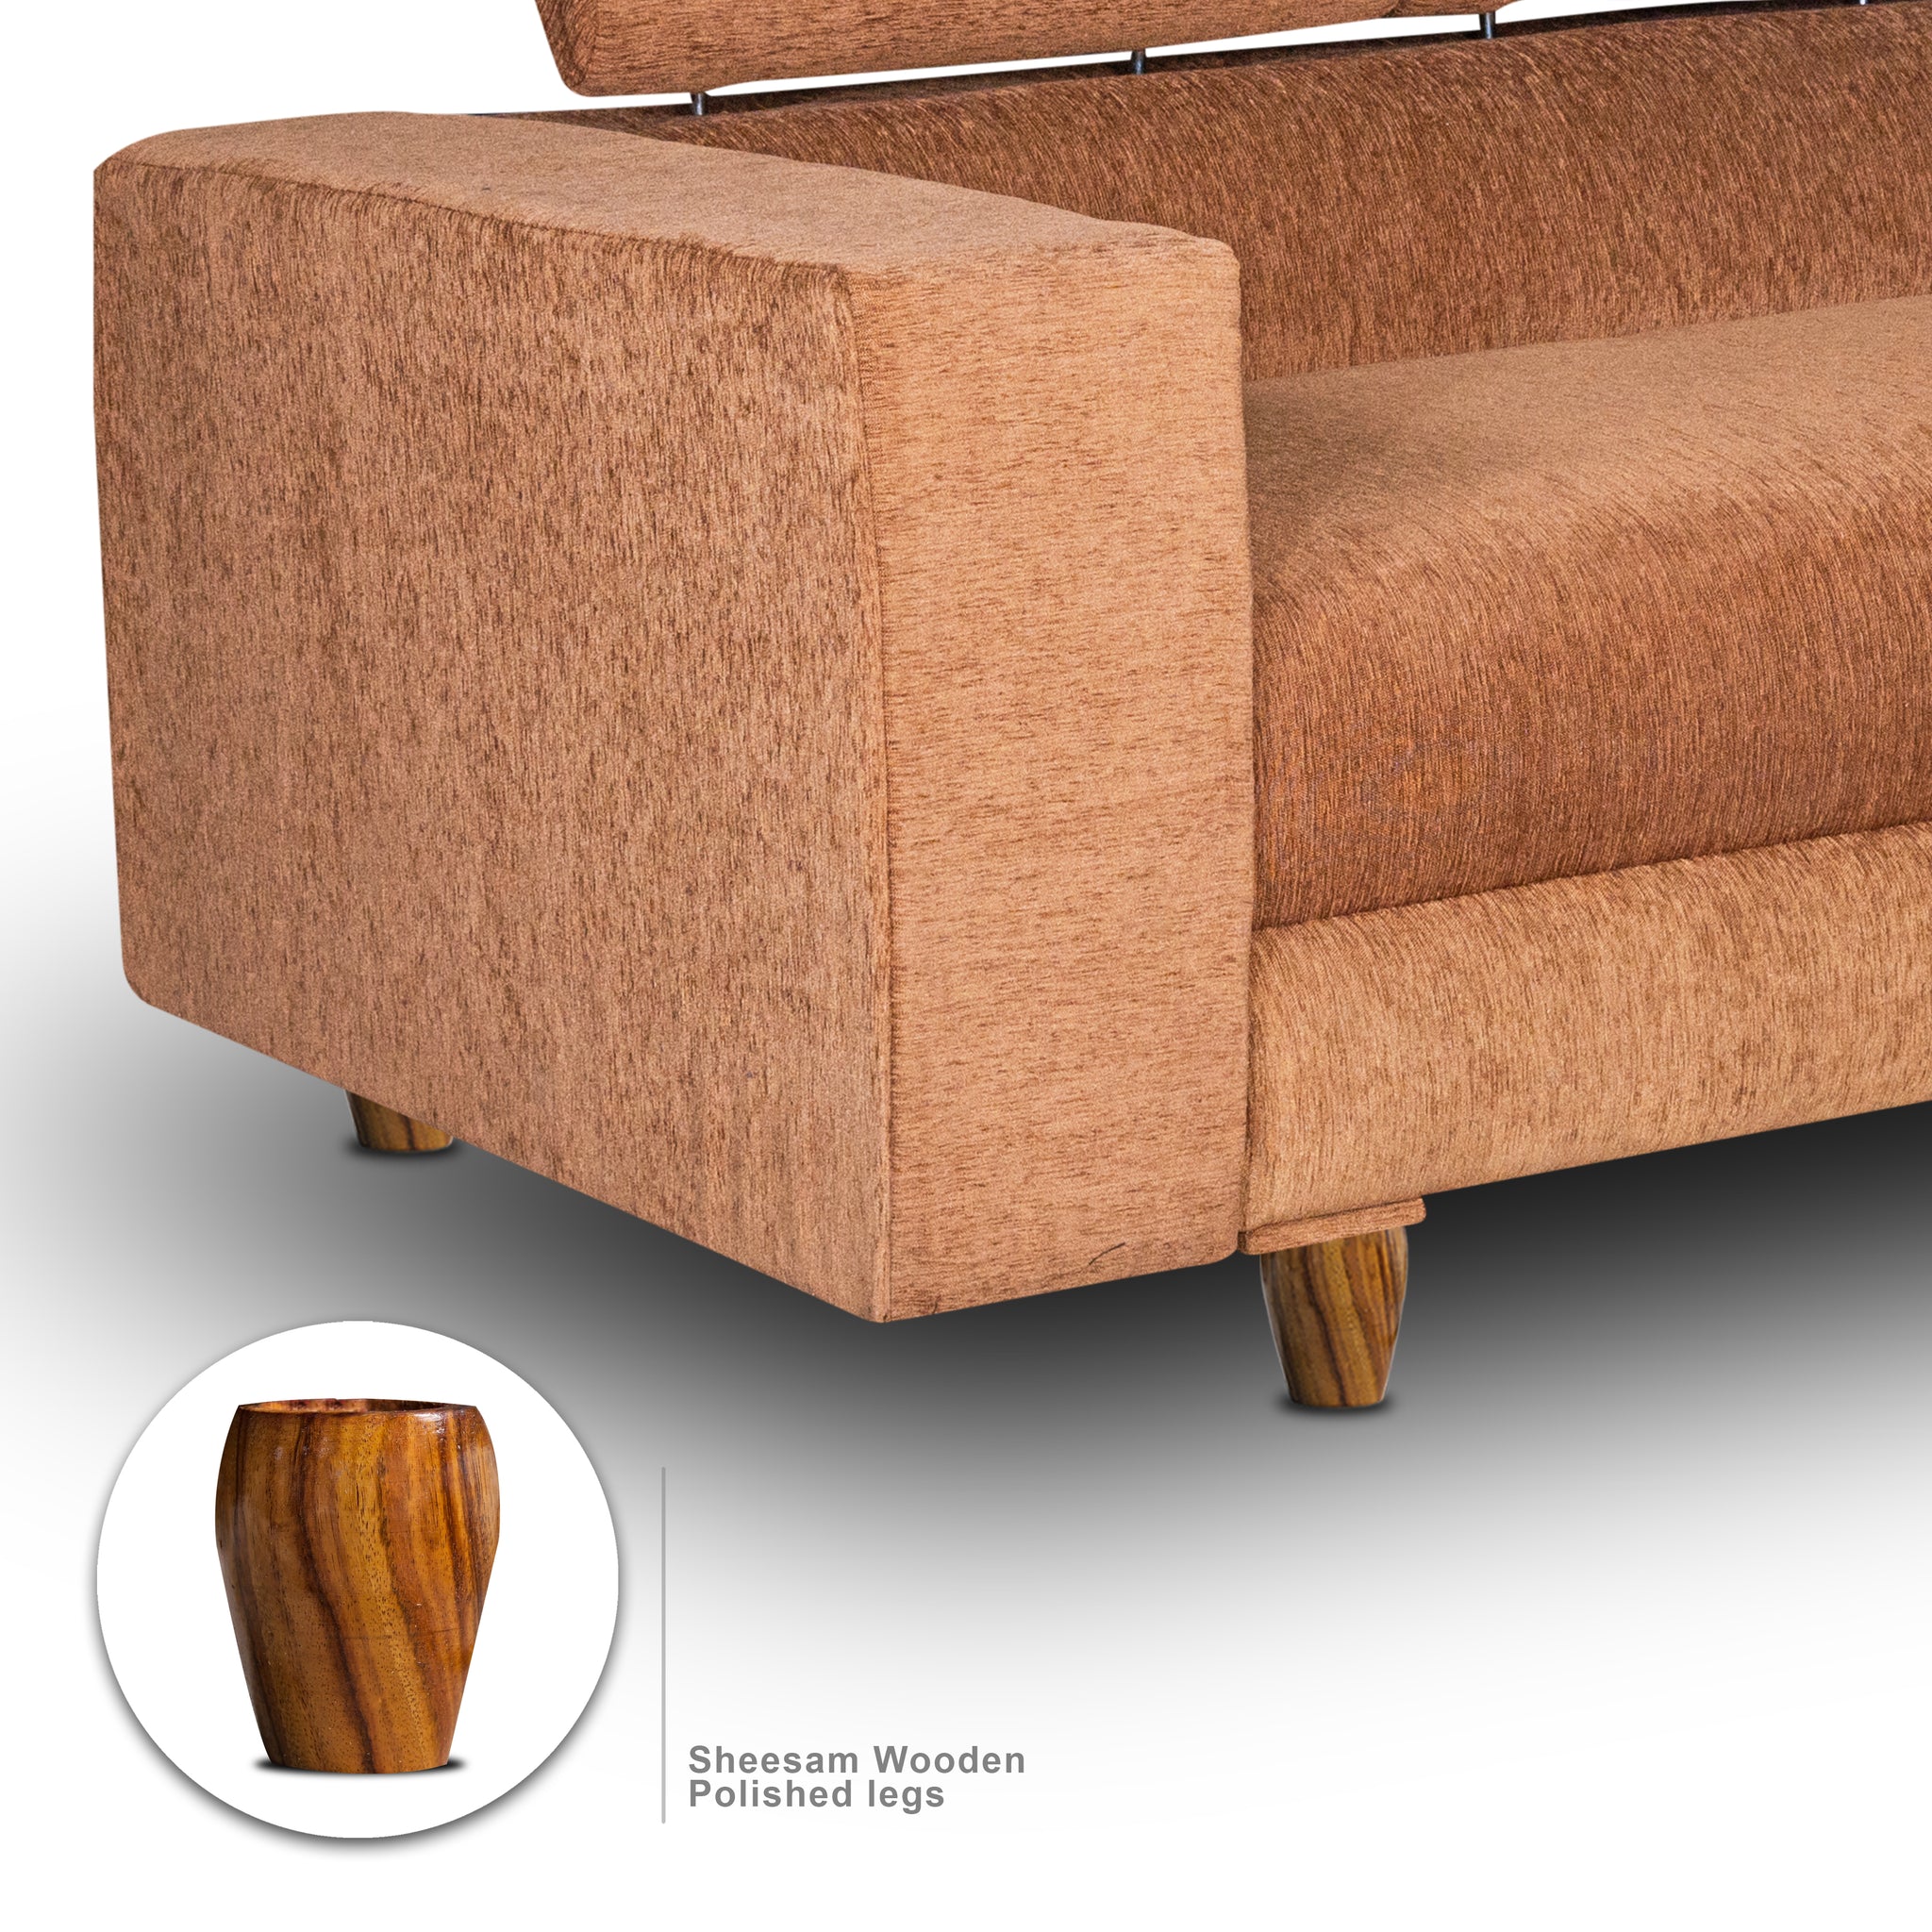 Berlin 2 Seater Sofa, Chenille Molfino Fabric (Finish Color - Beige)